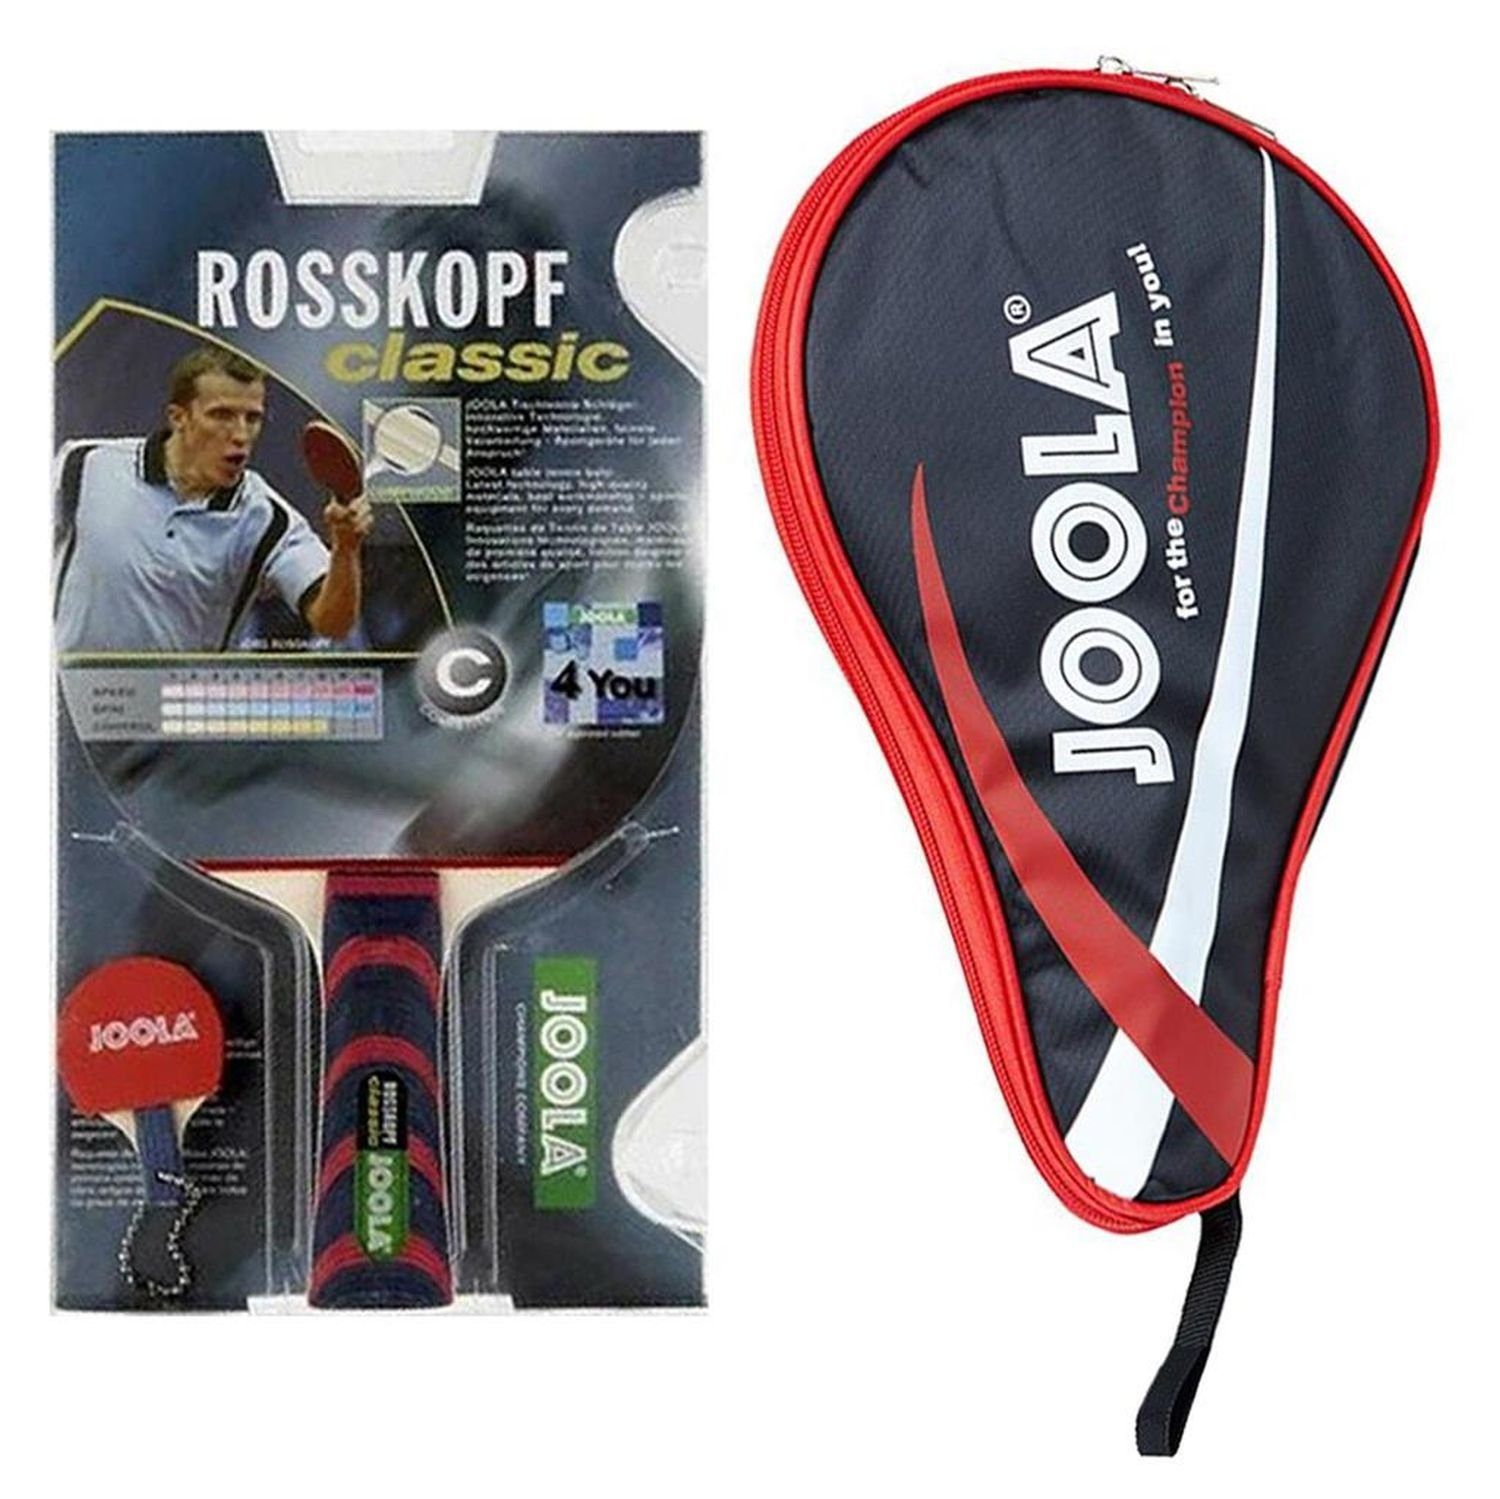 Joola Tischtennisschläger Rosskopf Classic + Pocket rot, Tischtennis Schläger Set Tischtennisset Table Tennis Bat Racket